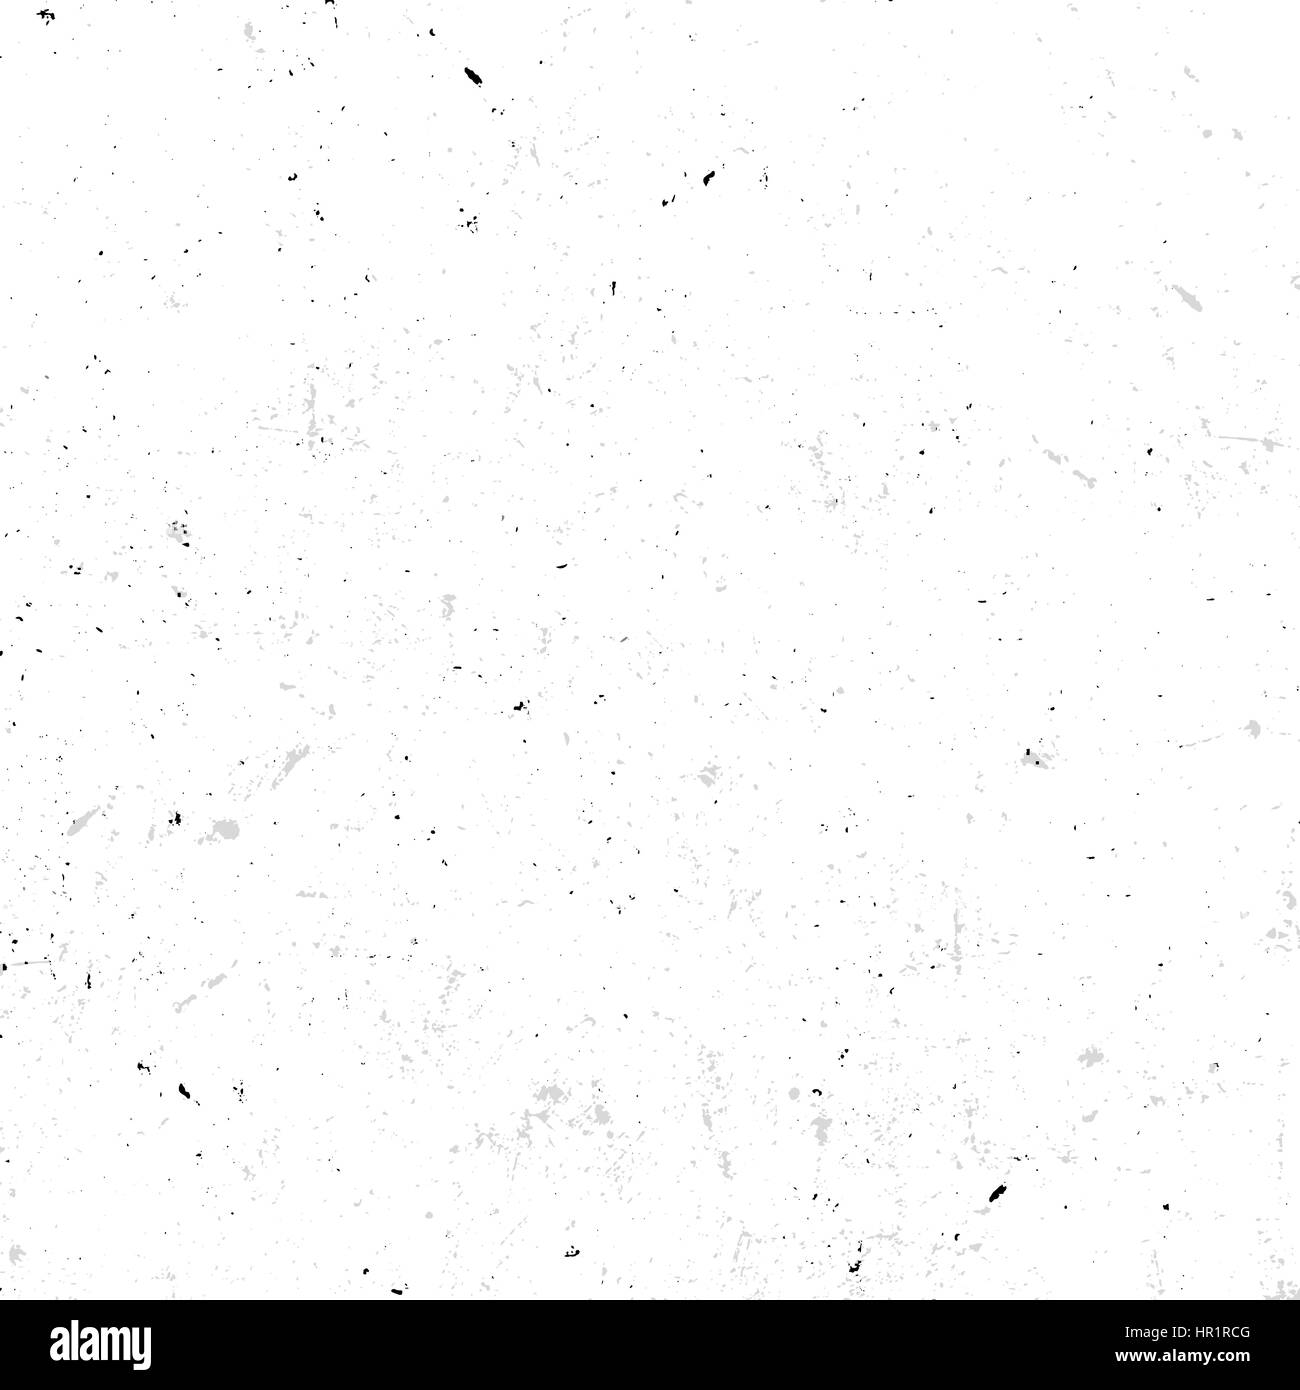 Isolierte abstrakt gesprenkelte weiße nahtlose Textur mit schmutzigen Effekt-Vektor-Illustration, alte Tapete Hintergrund. Stock Vektor